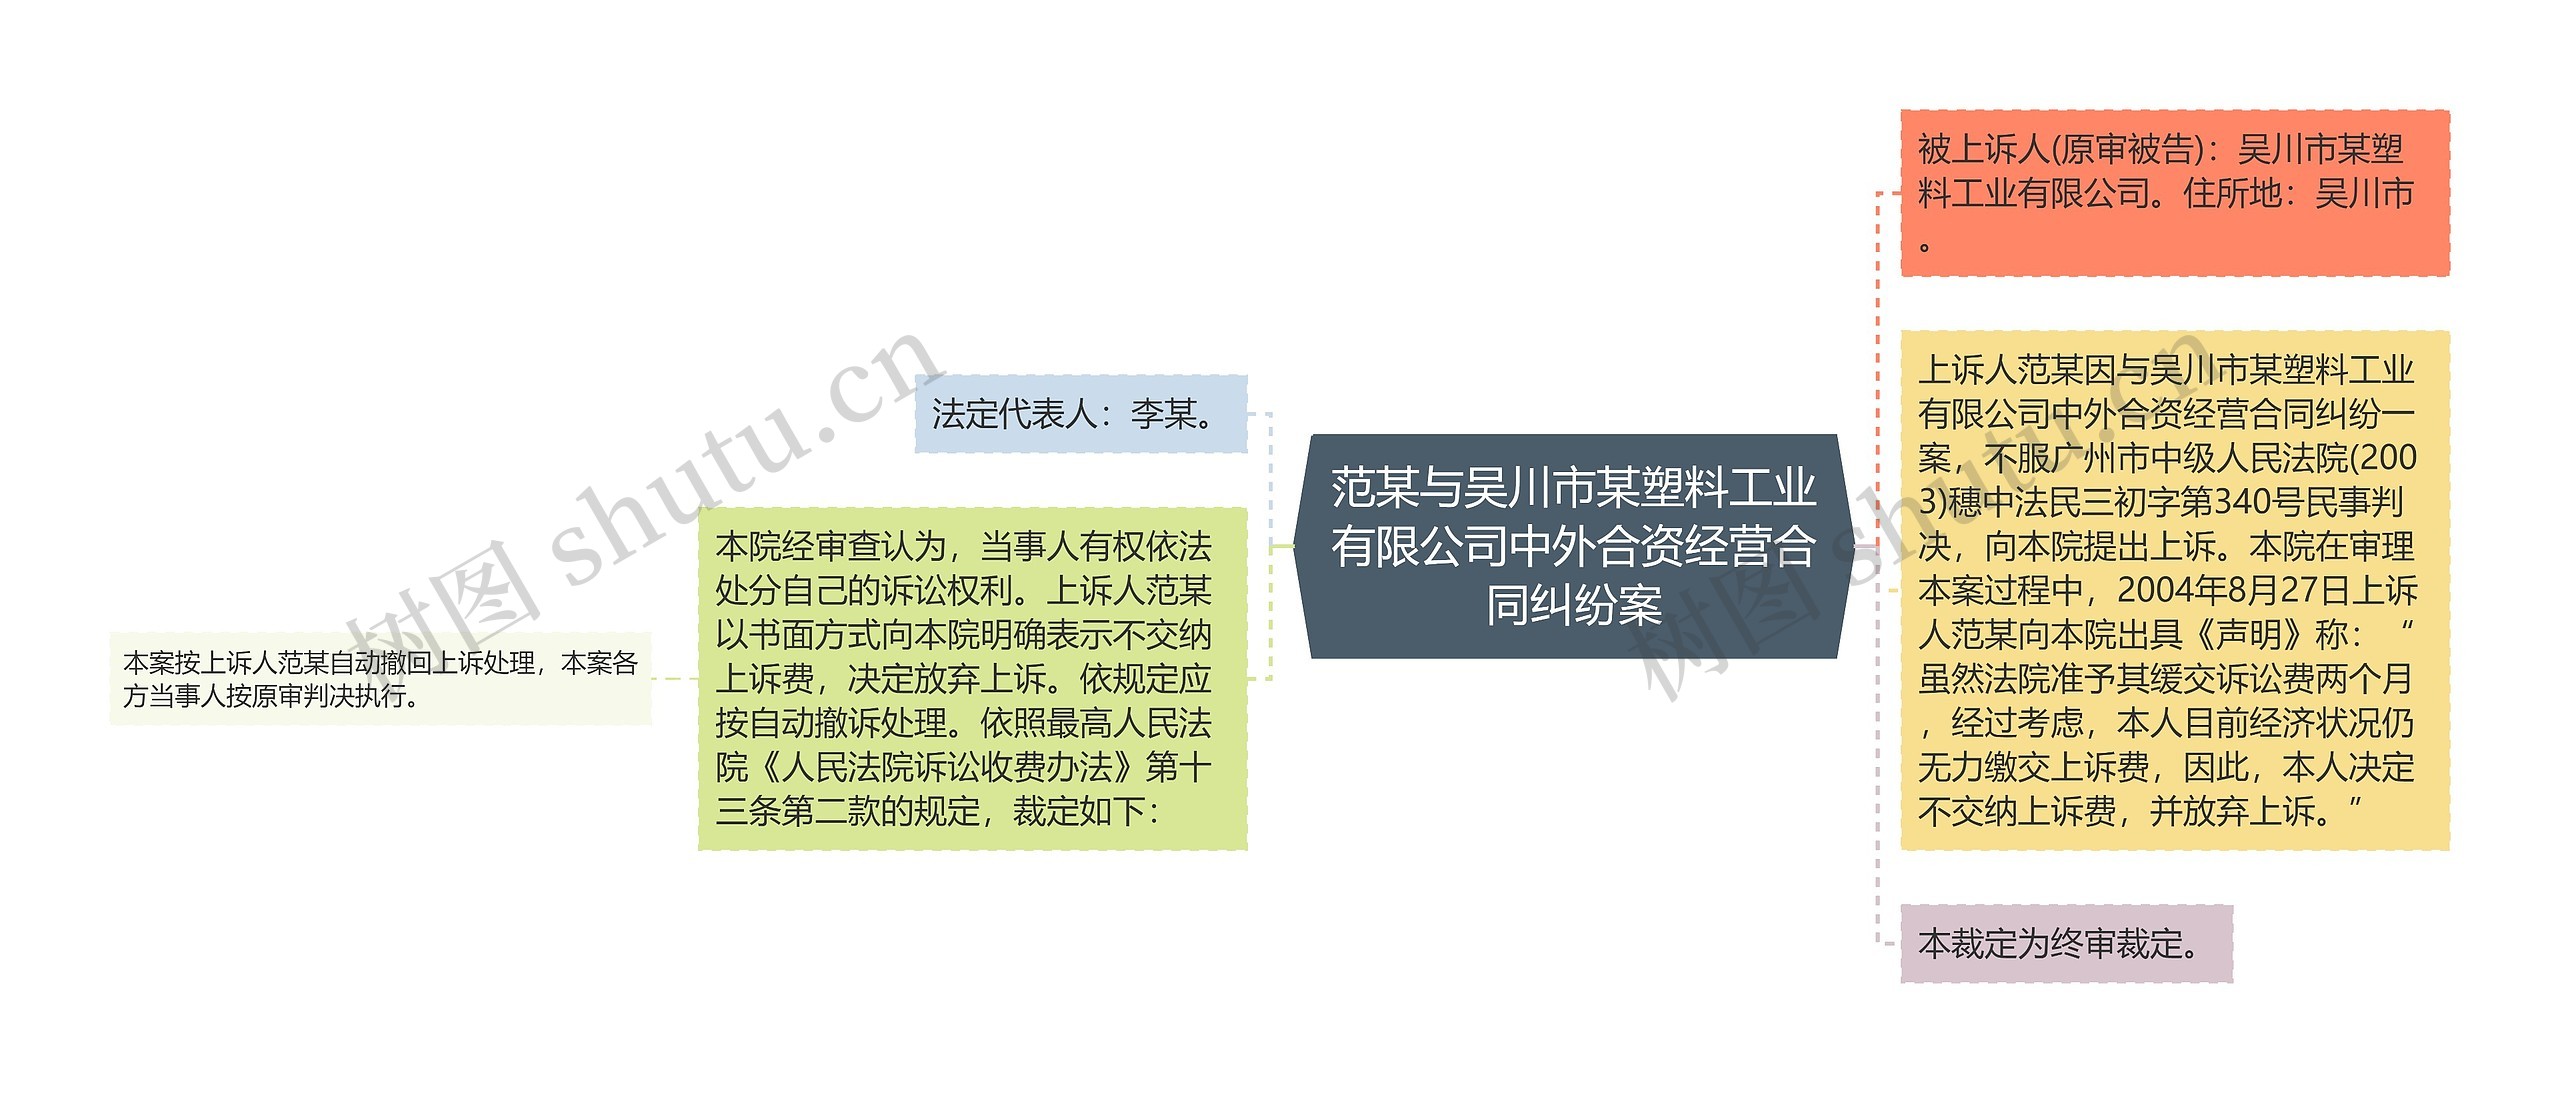 范某与吴川市某塑料工业有限公司中外合资经营合同纠纷案